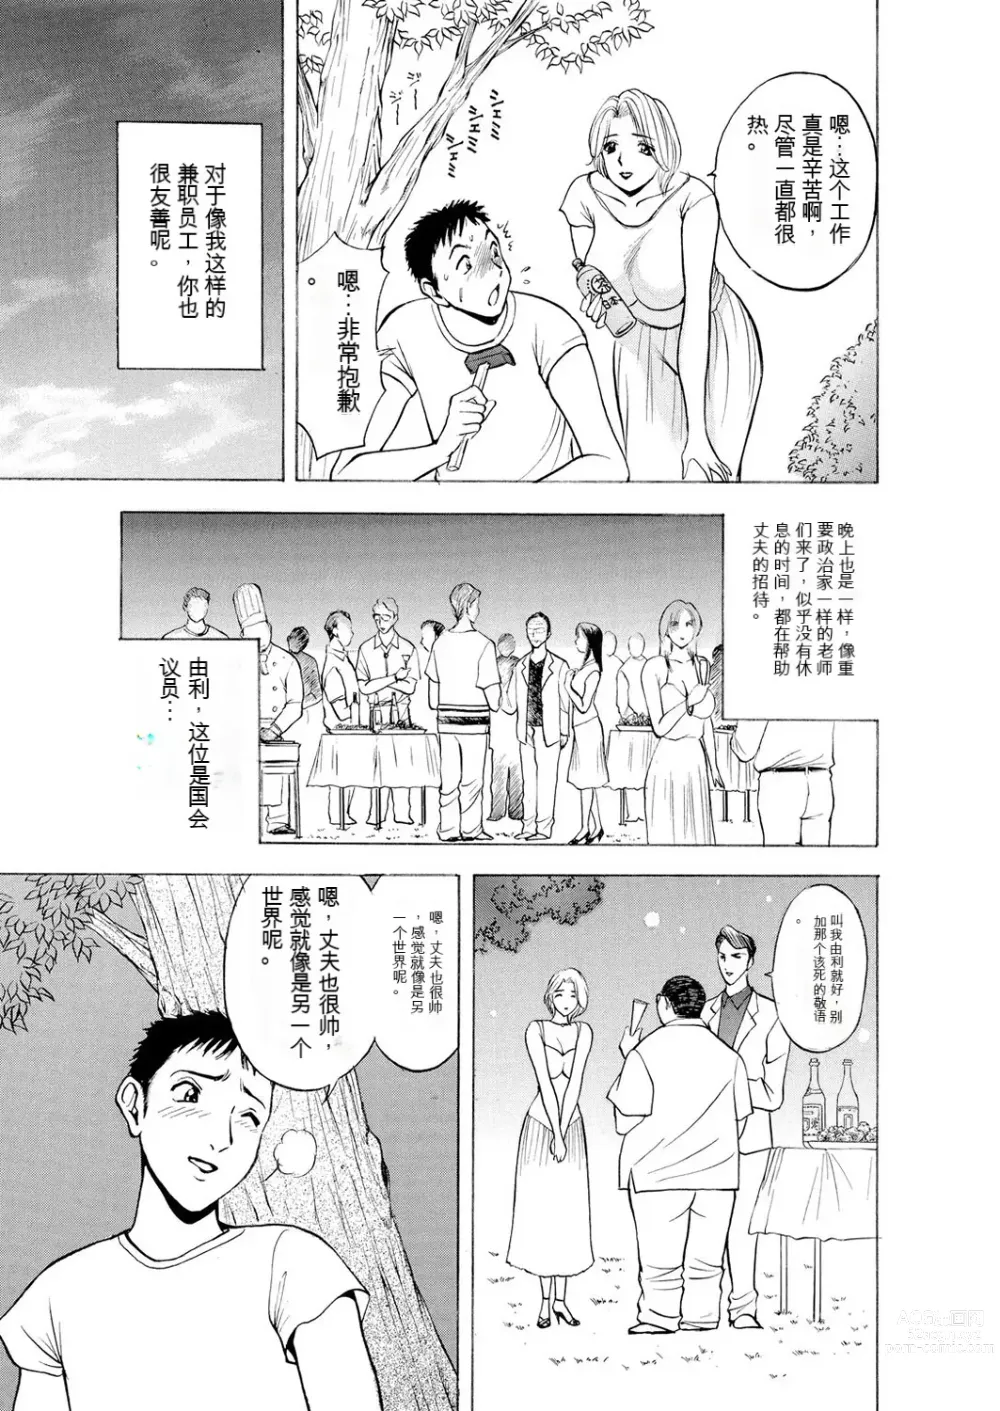 Page 5 of manga Netorare